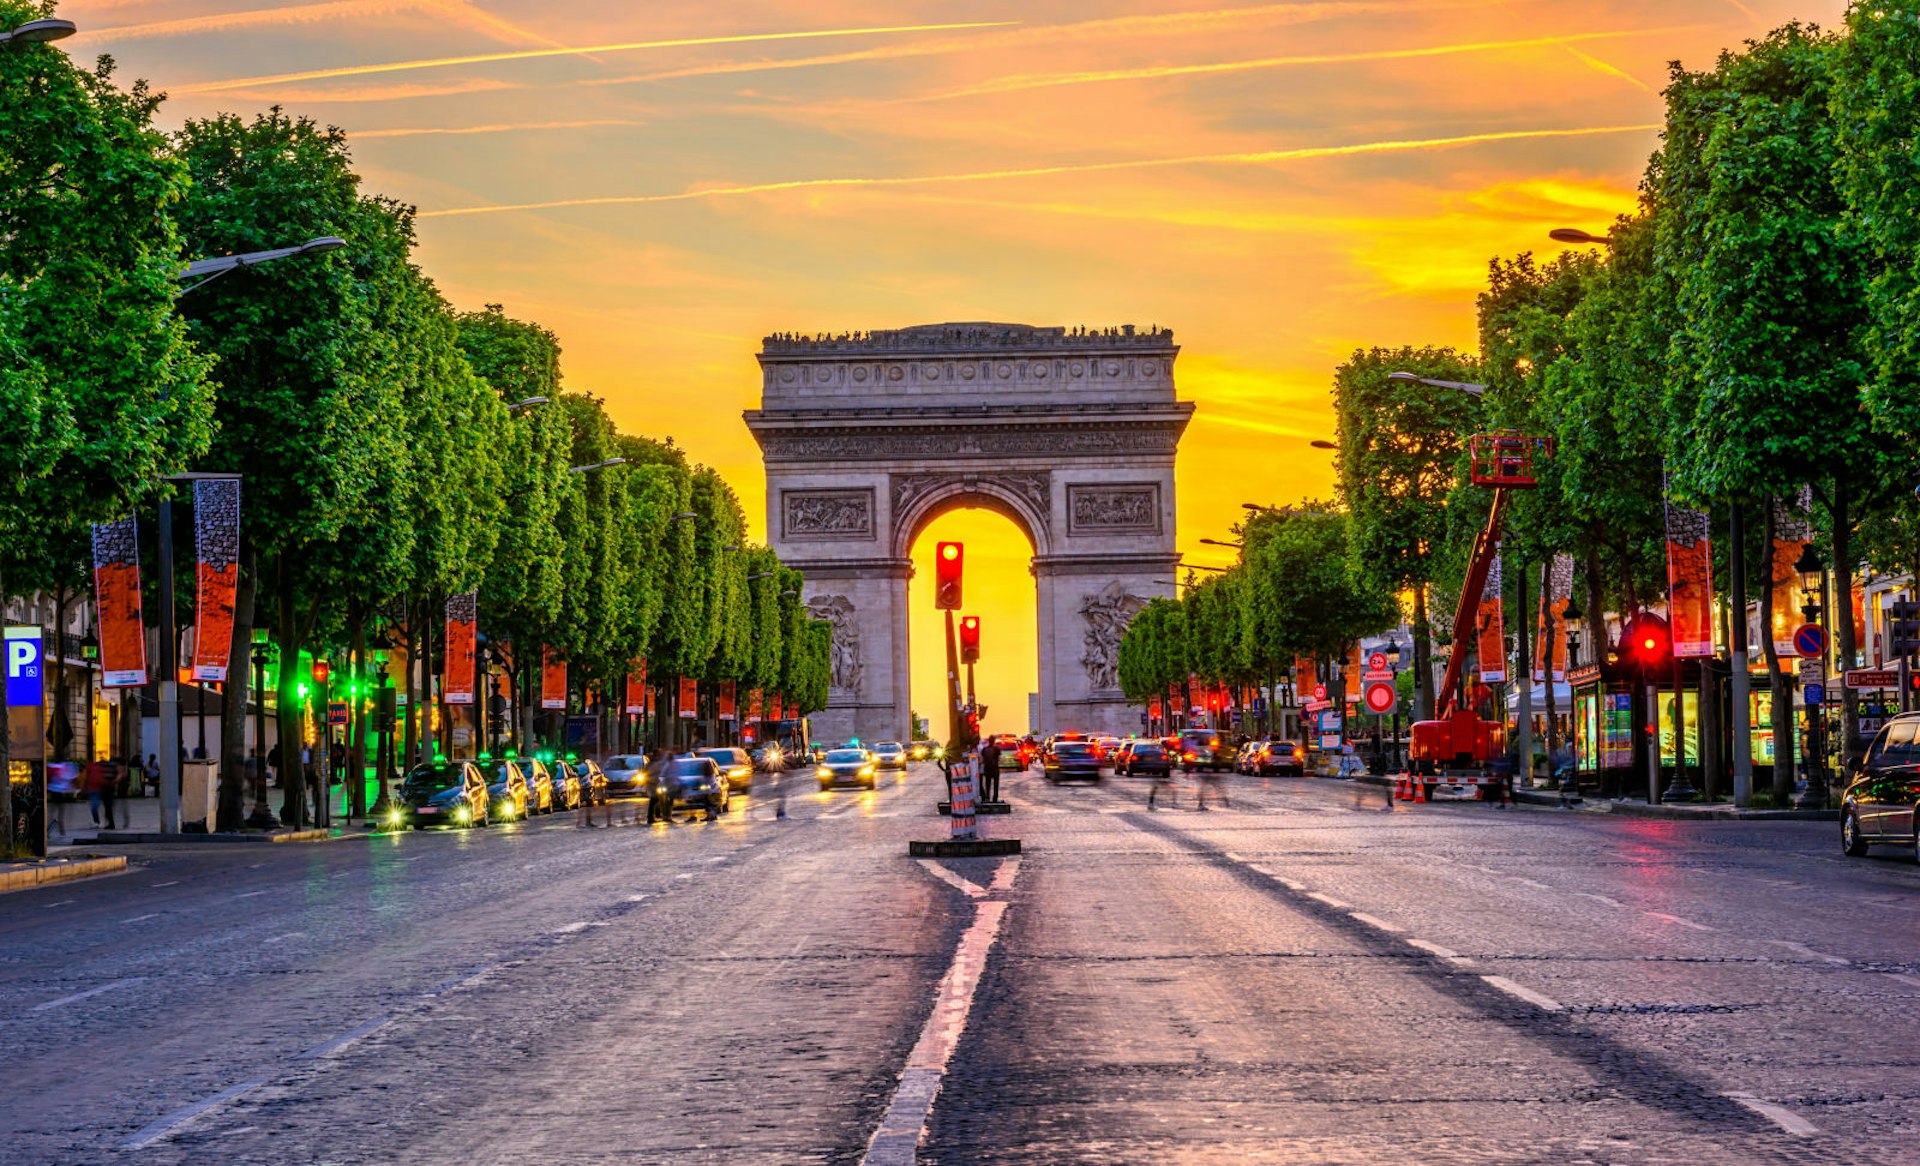 The golden sun sets over the av des Champs-Élysées in Paris, France